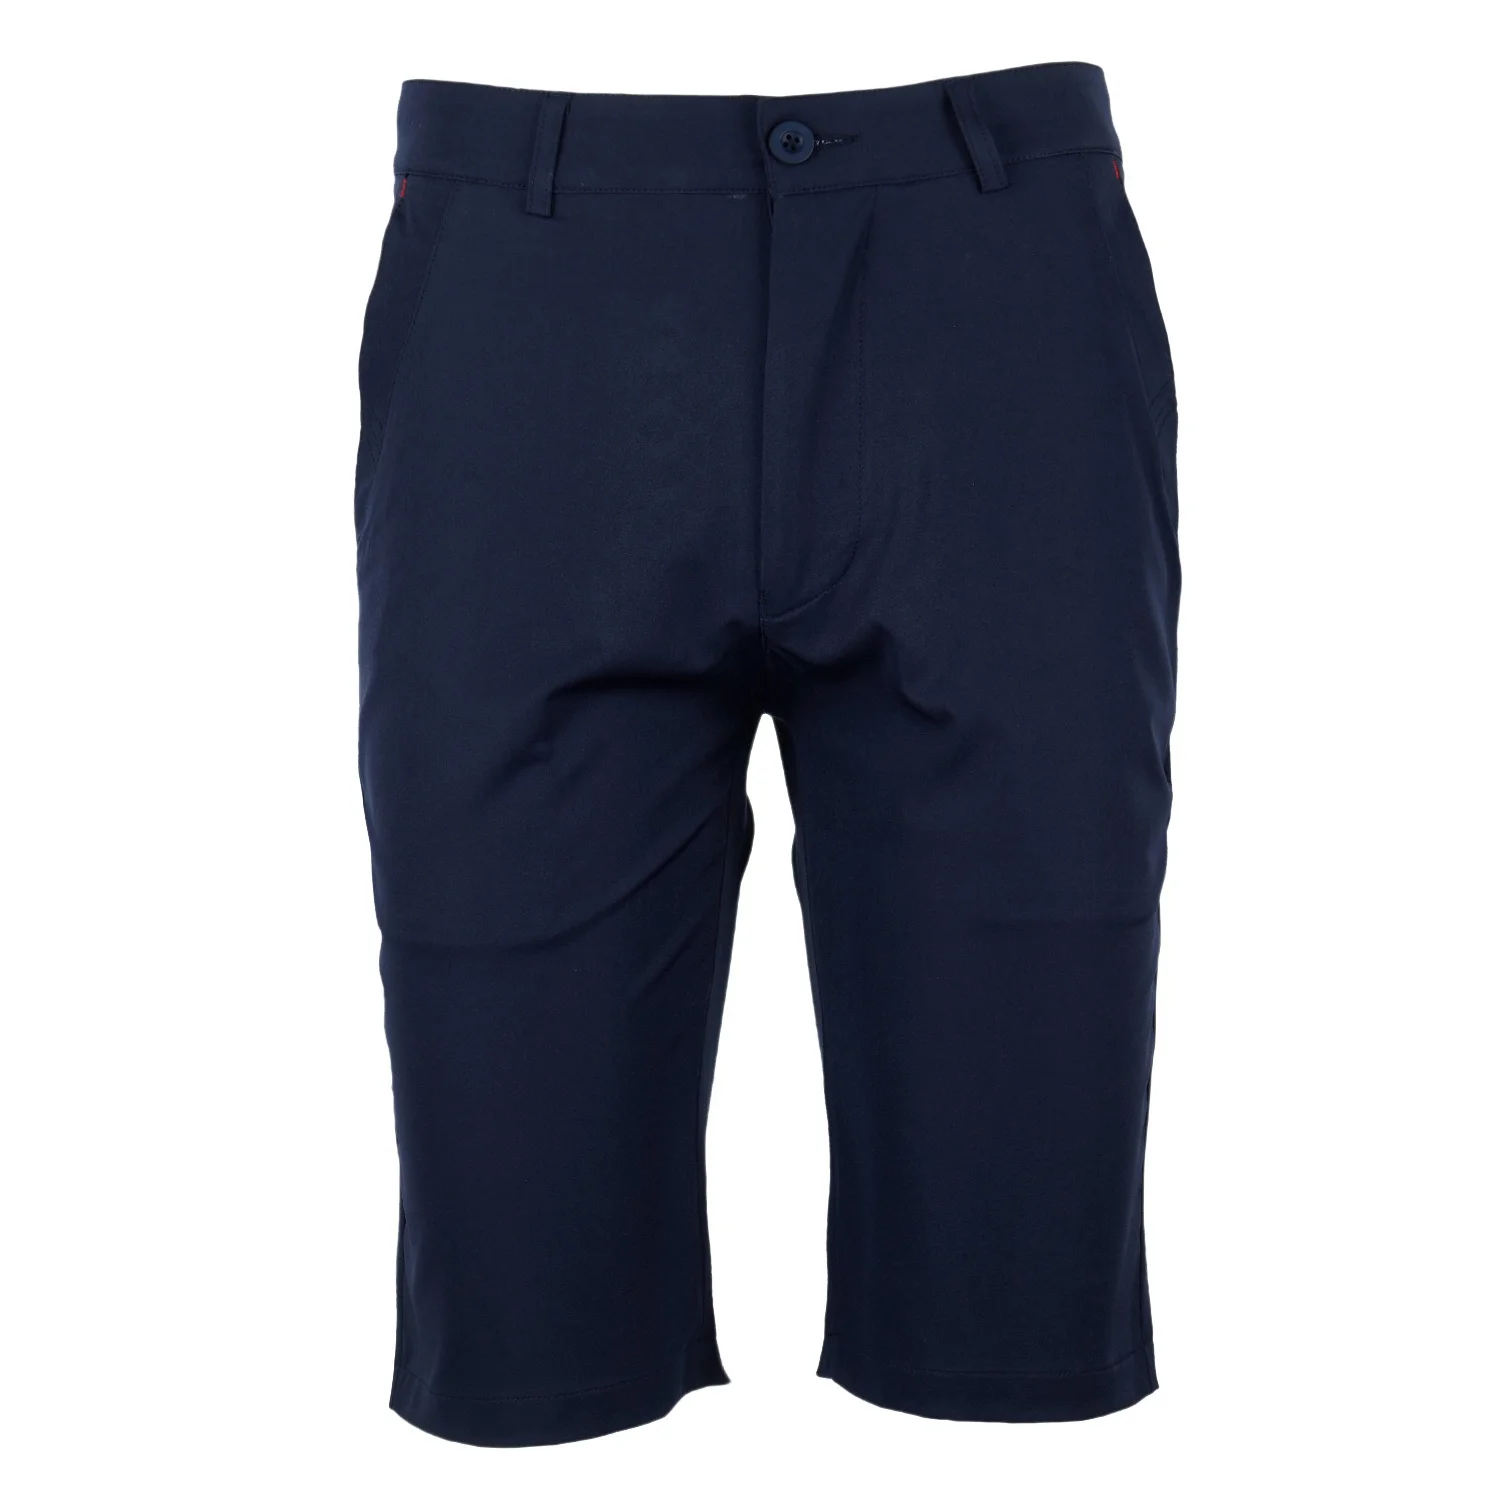 Pgm шорты для гольфа мужские спортивные шорты для гольфа летние дышащие быстросохнущие шорты - Цвет: Navy blue